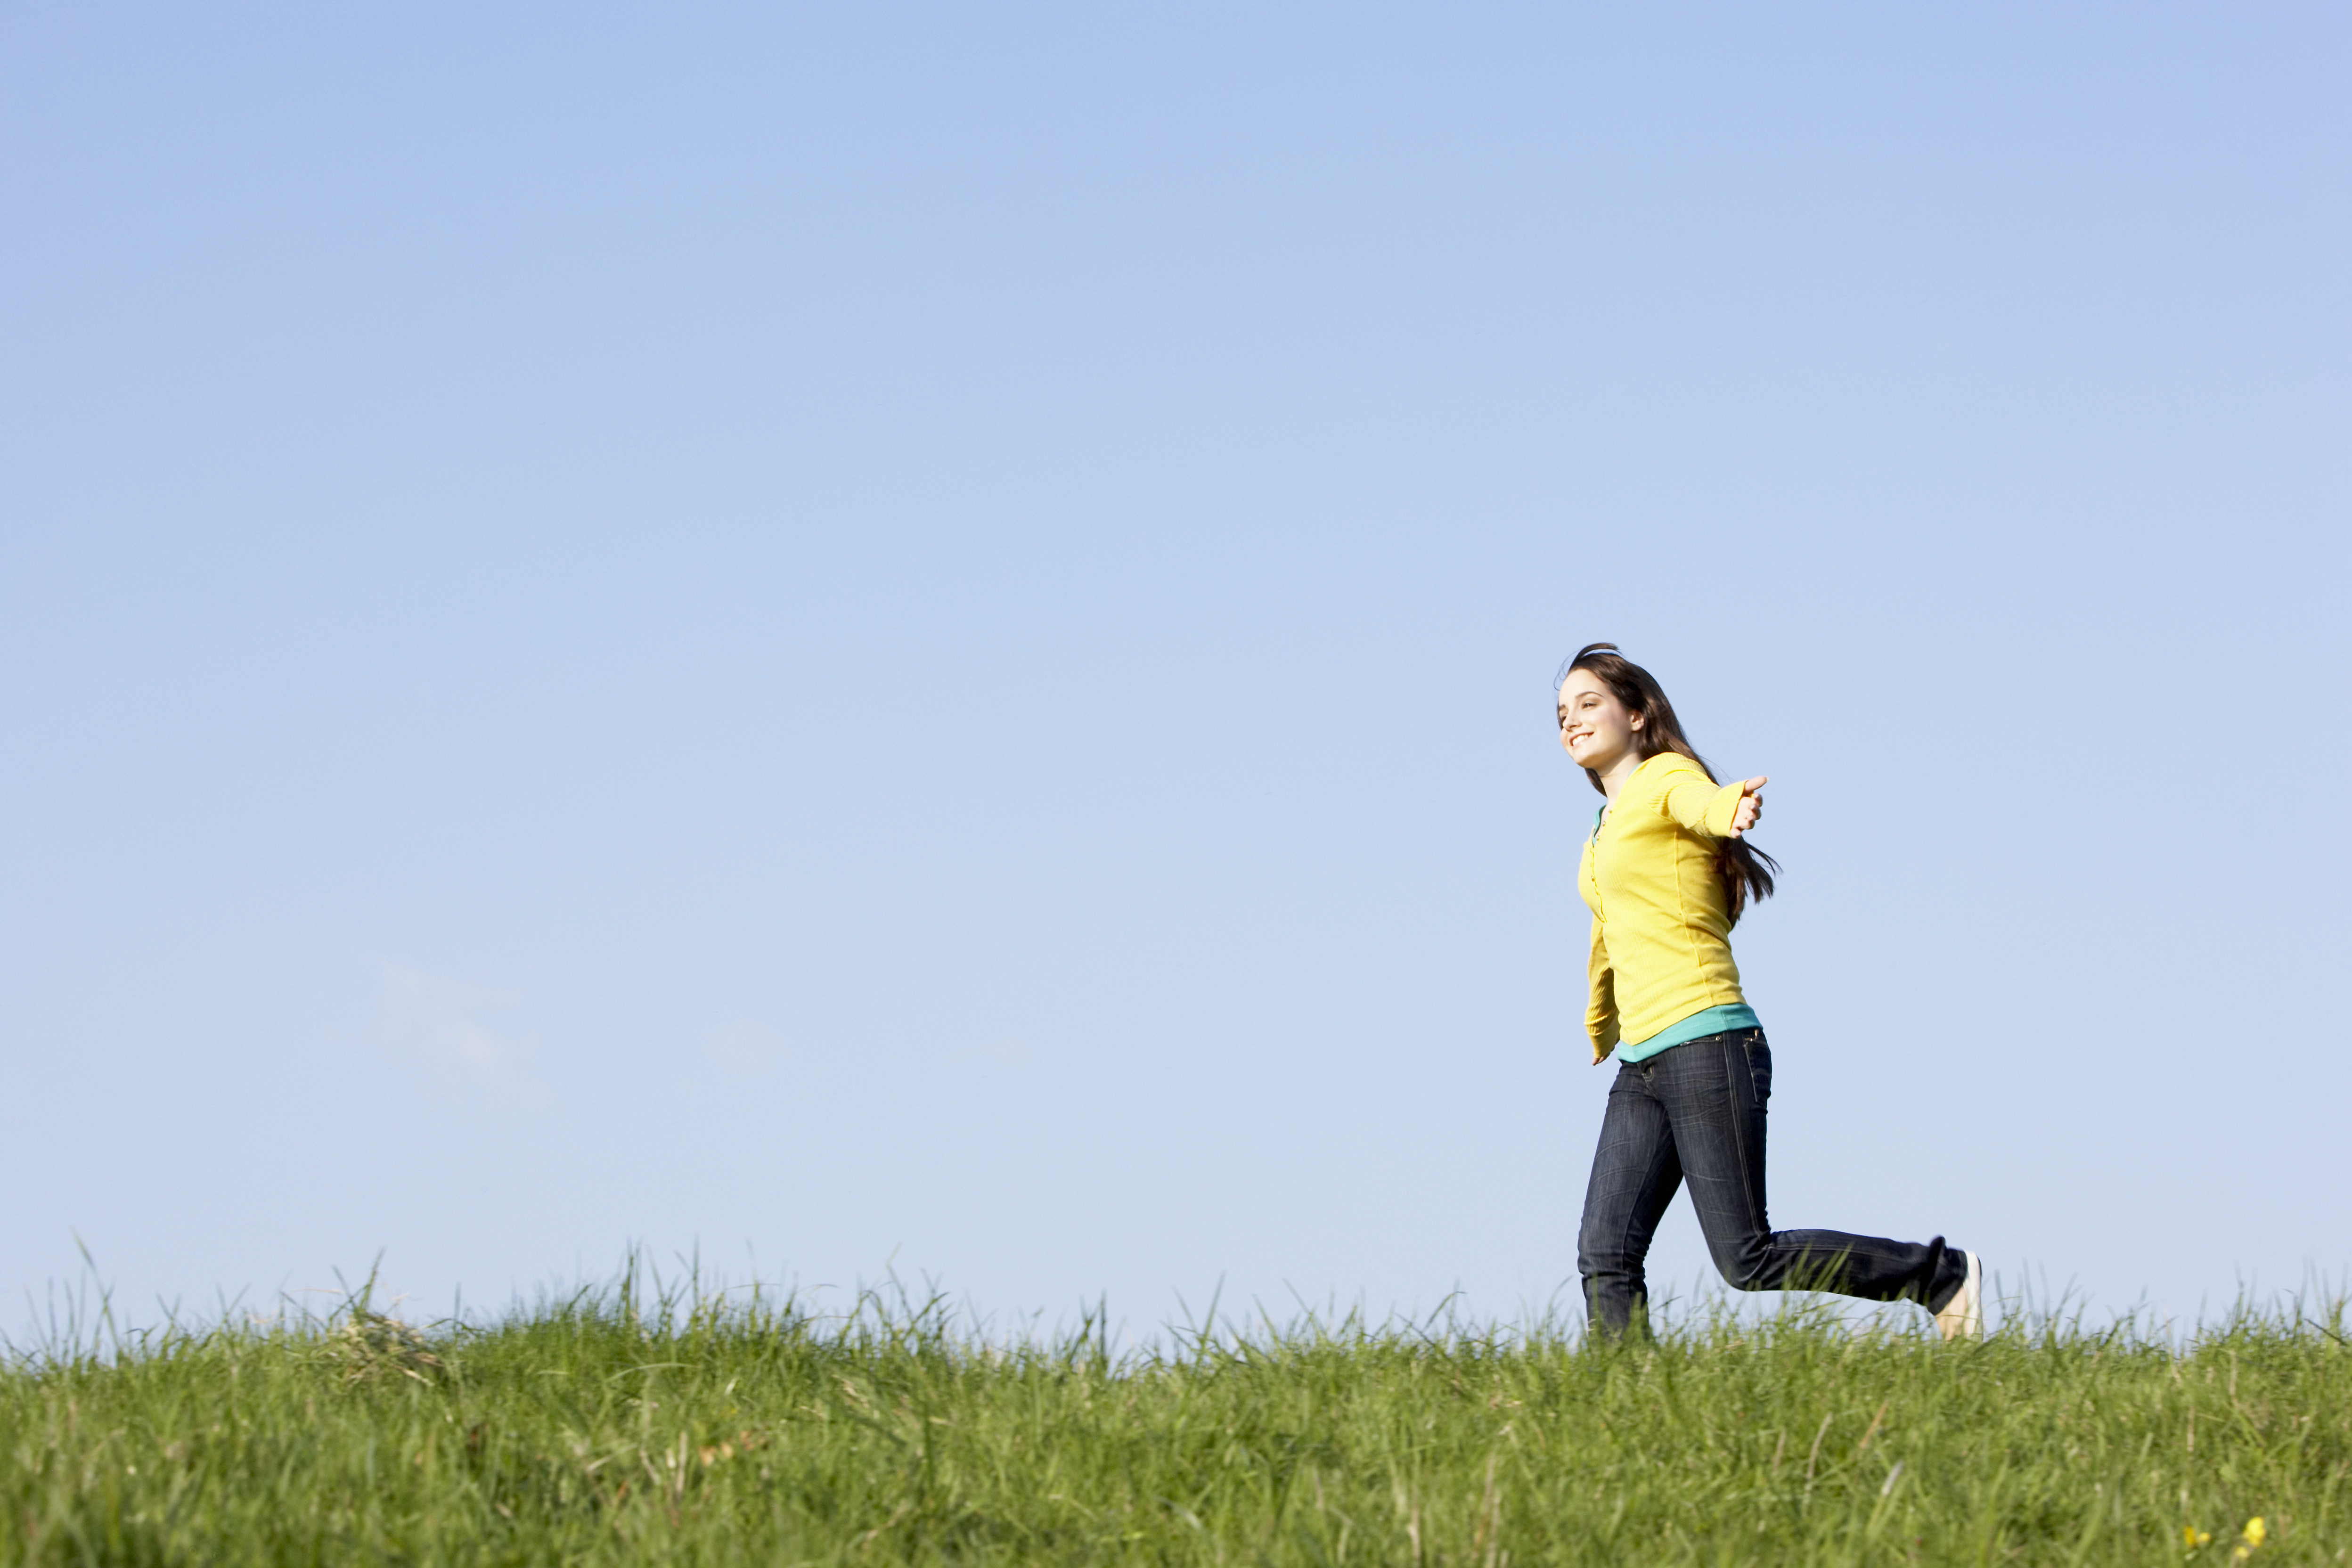 Teenage girl running through summer meadow | Source: Shutterstock.com